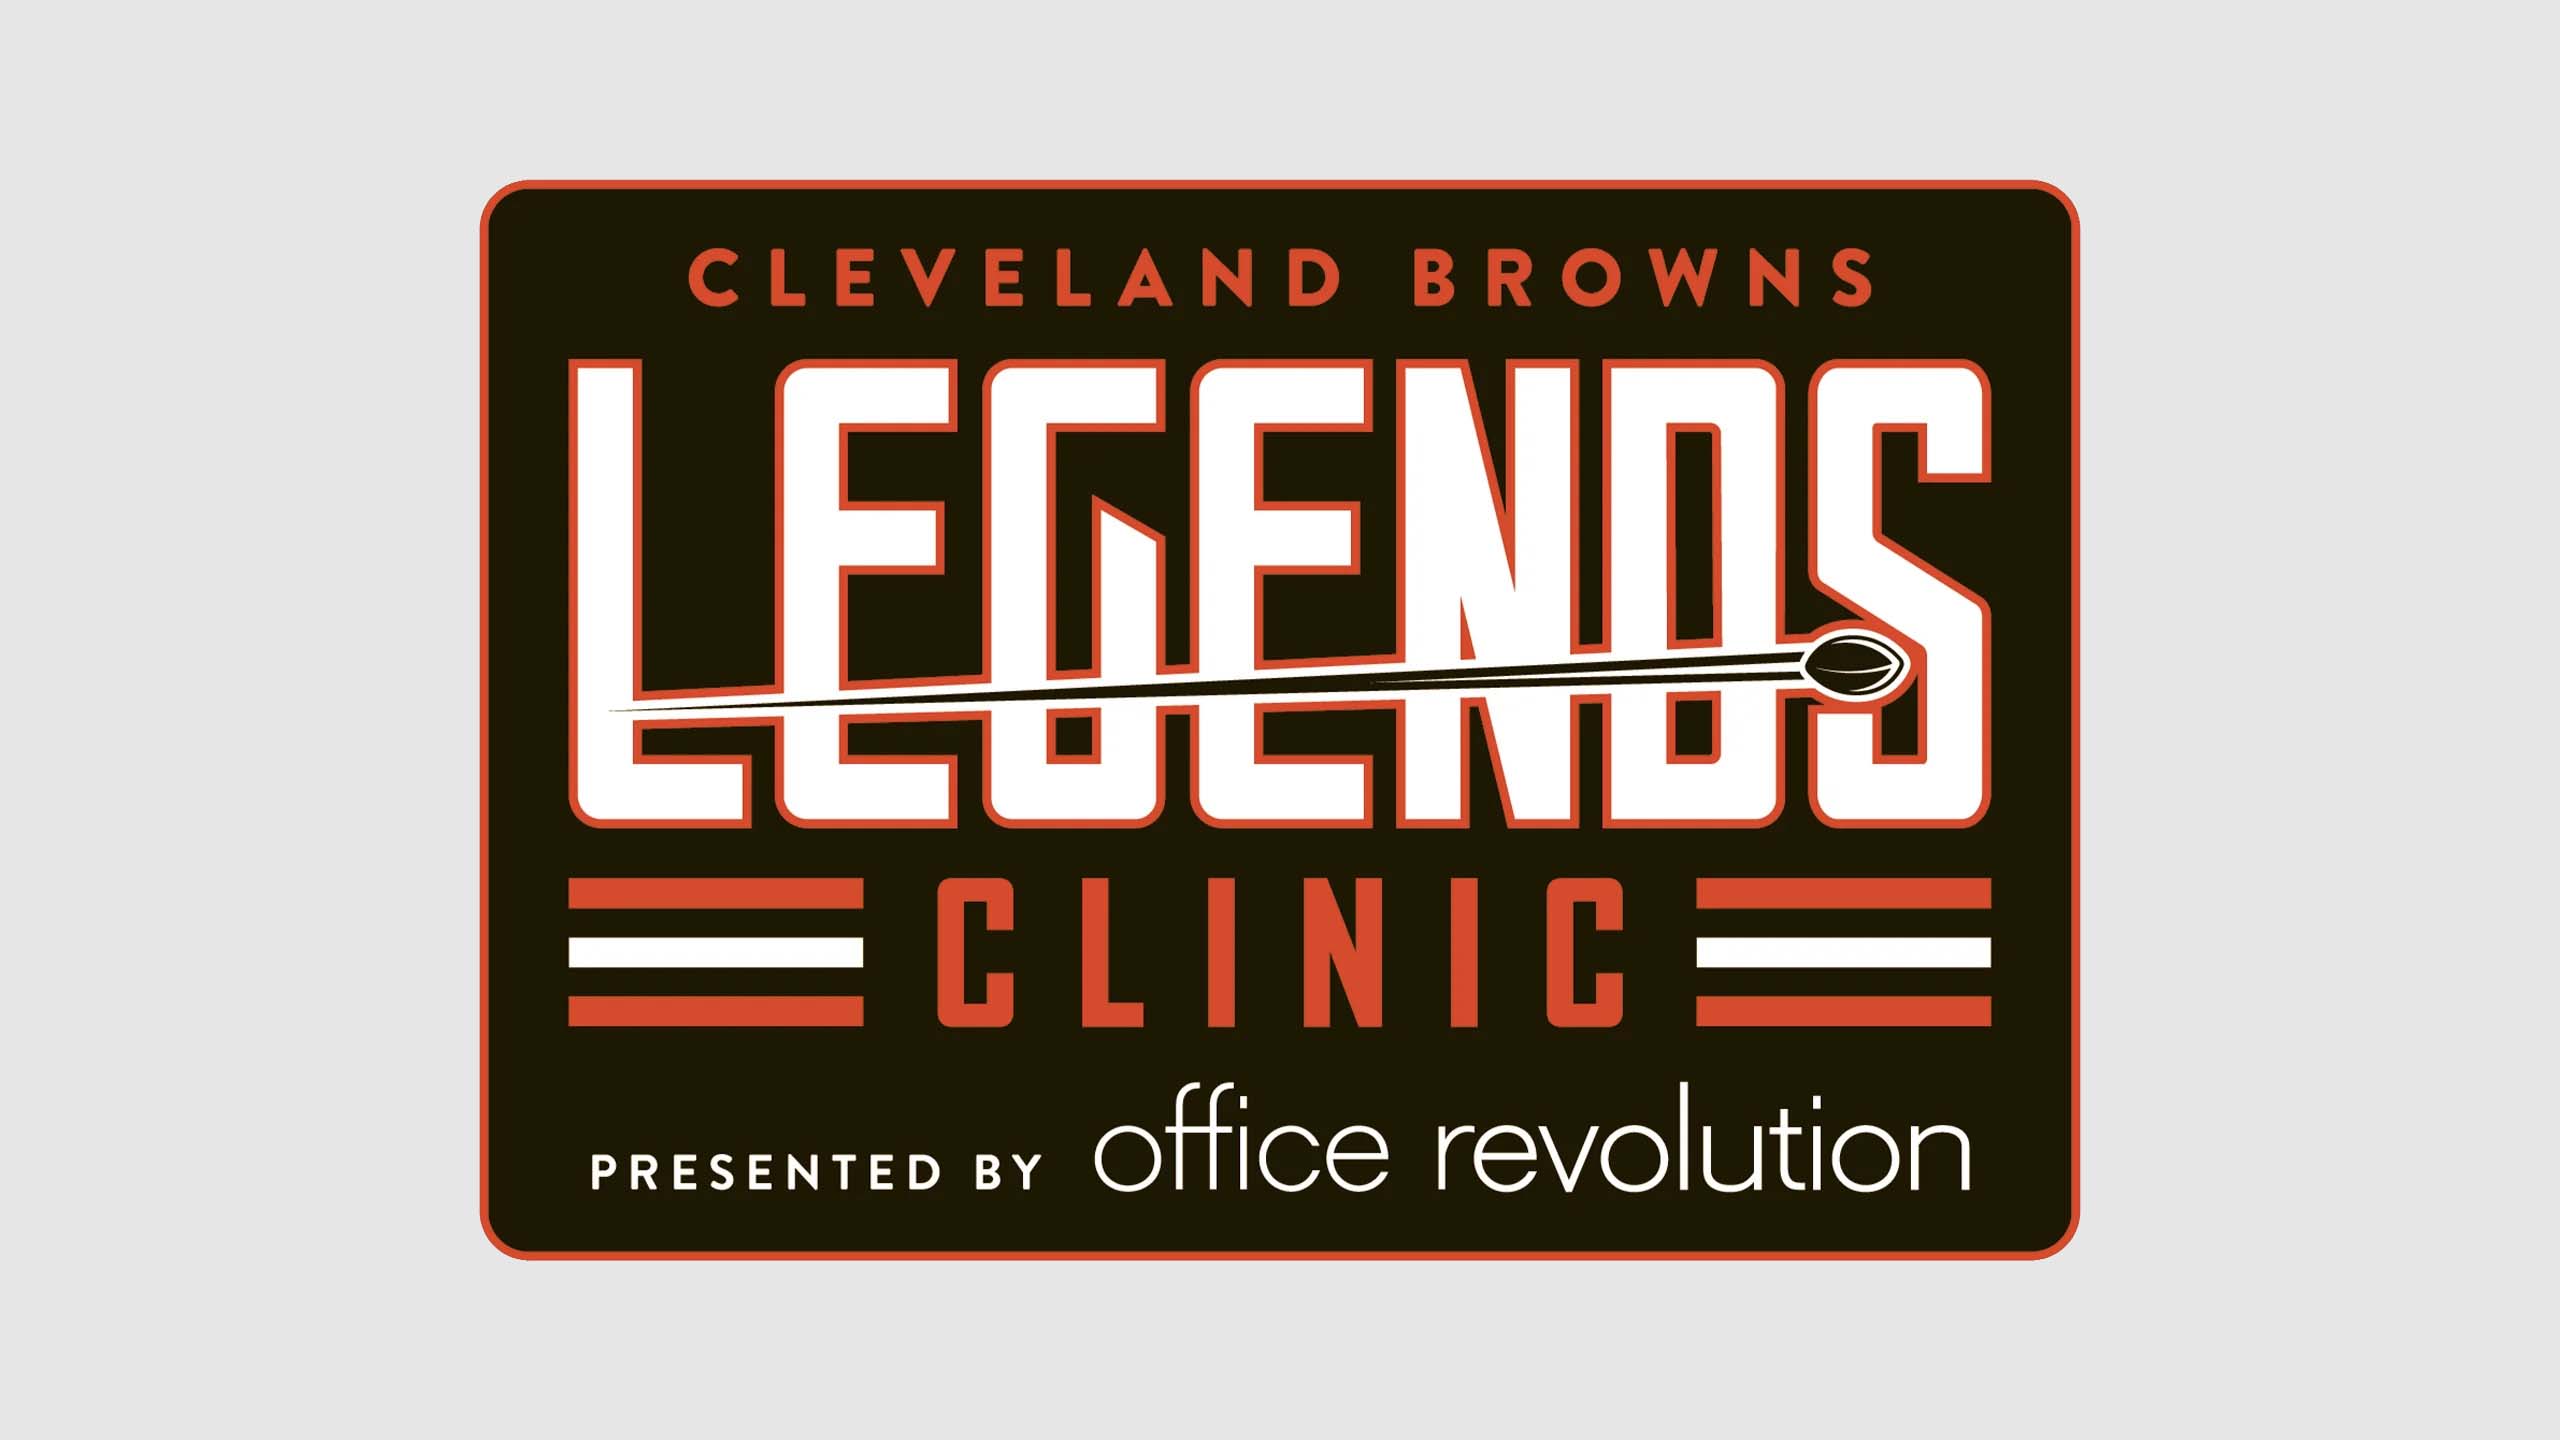 Cleveland Browns LEGENDS Clinics